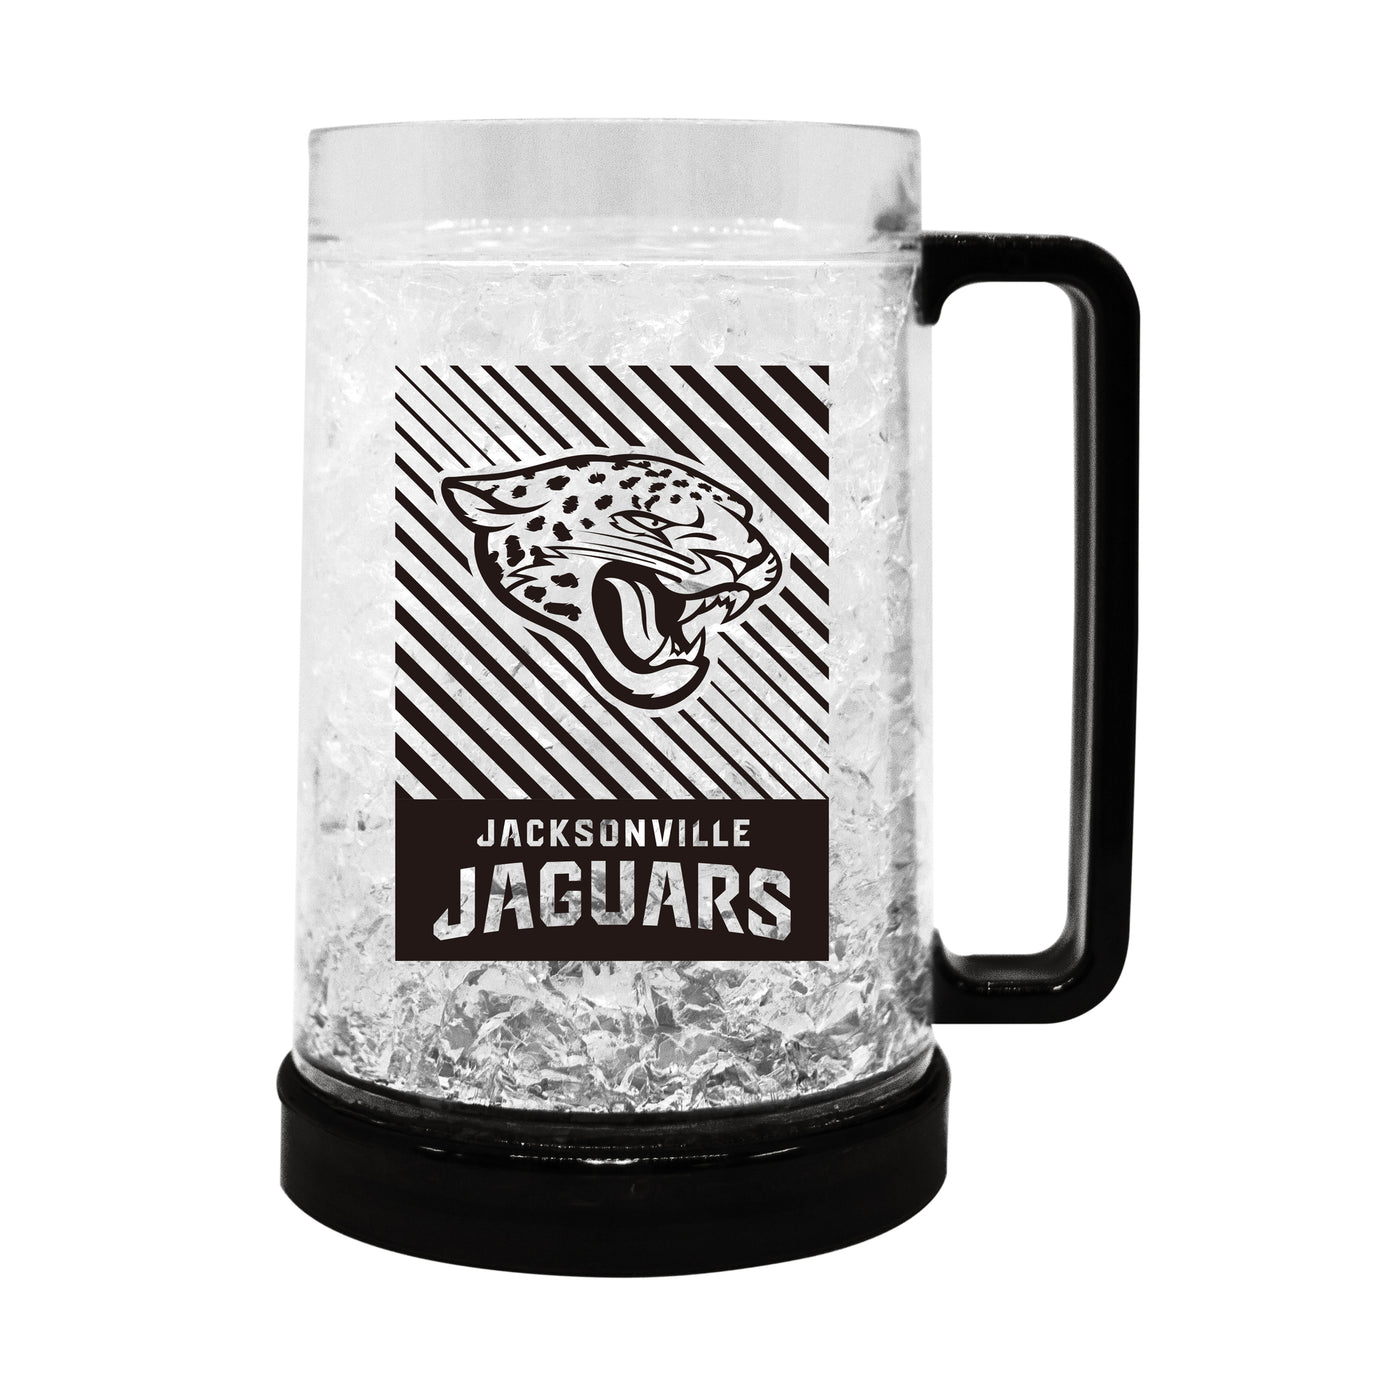 Jacksonville Jaguars Freezer Mug